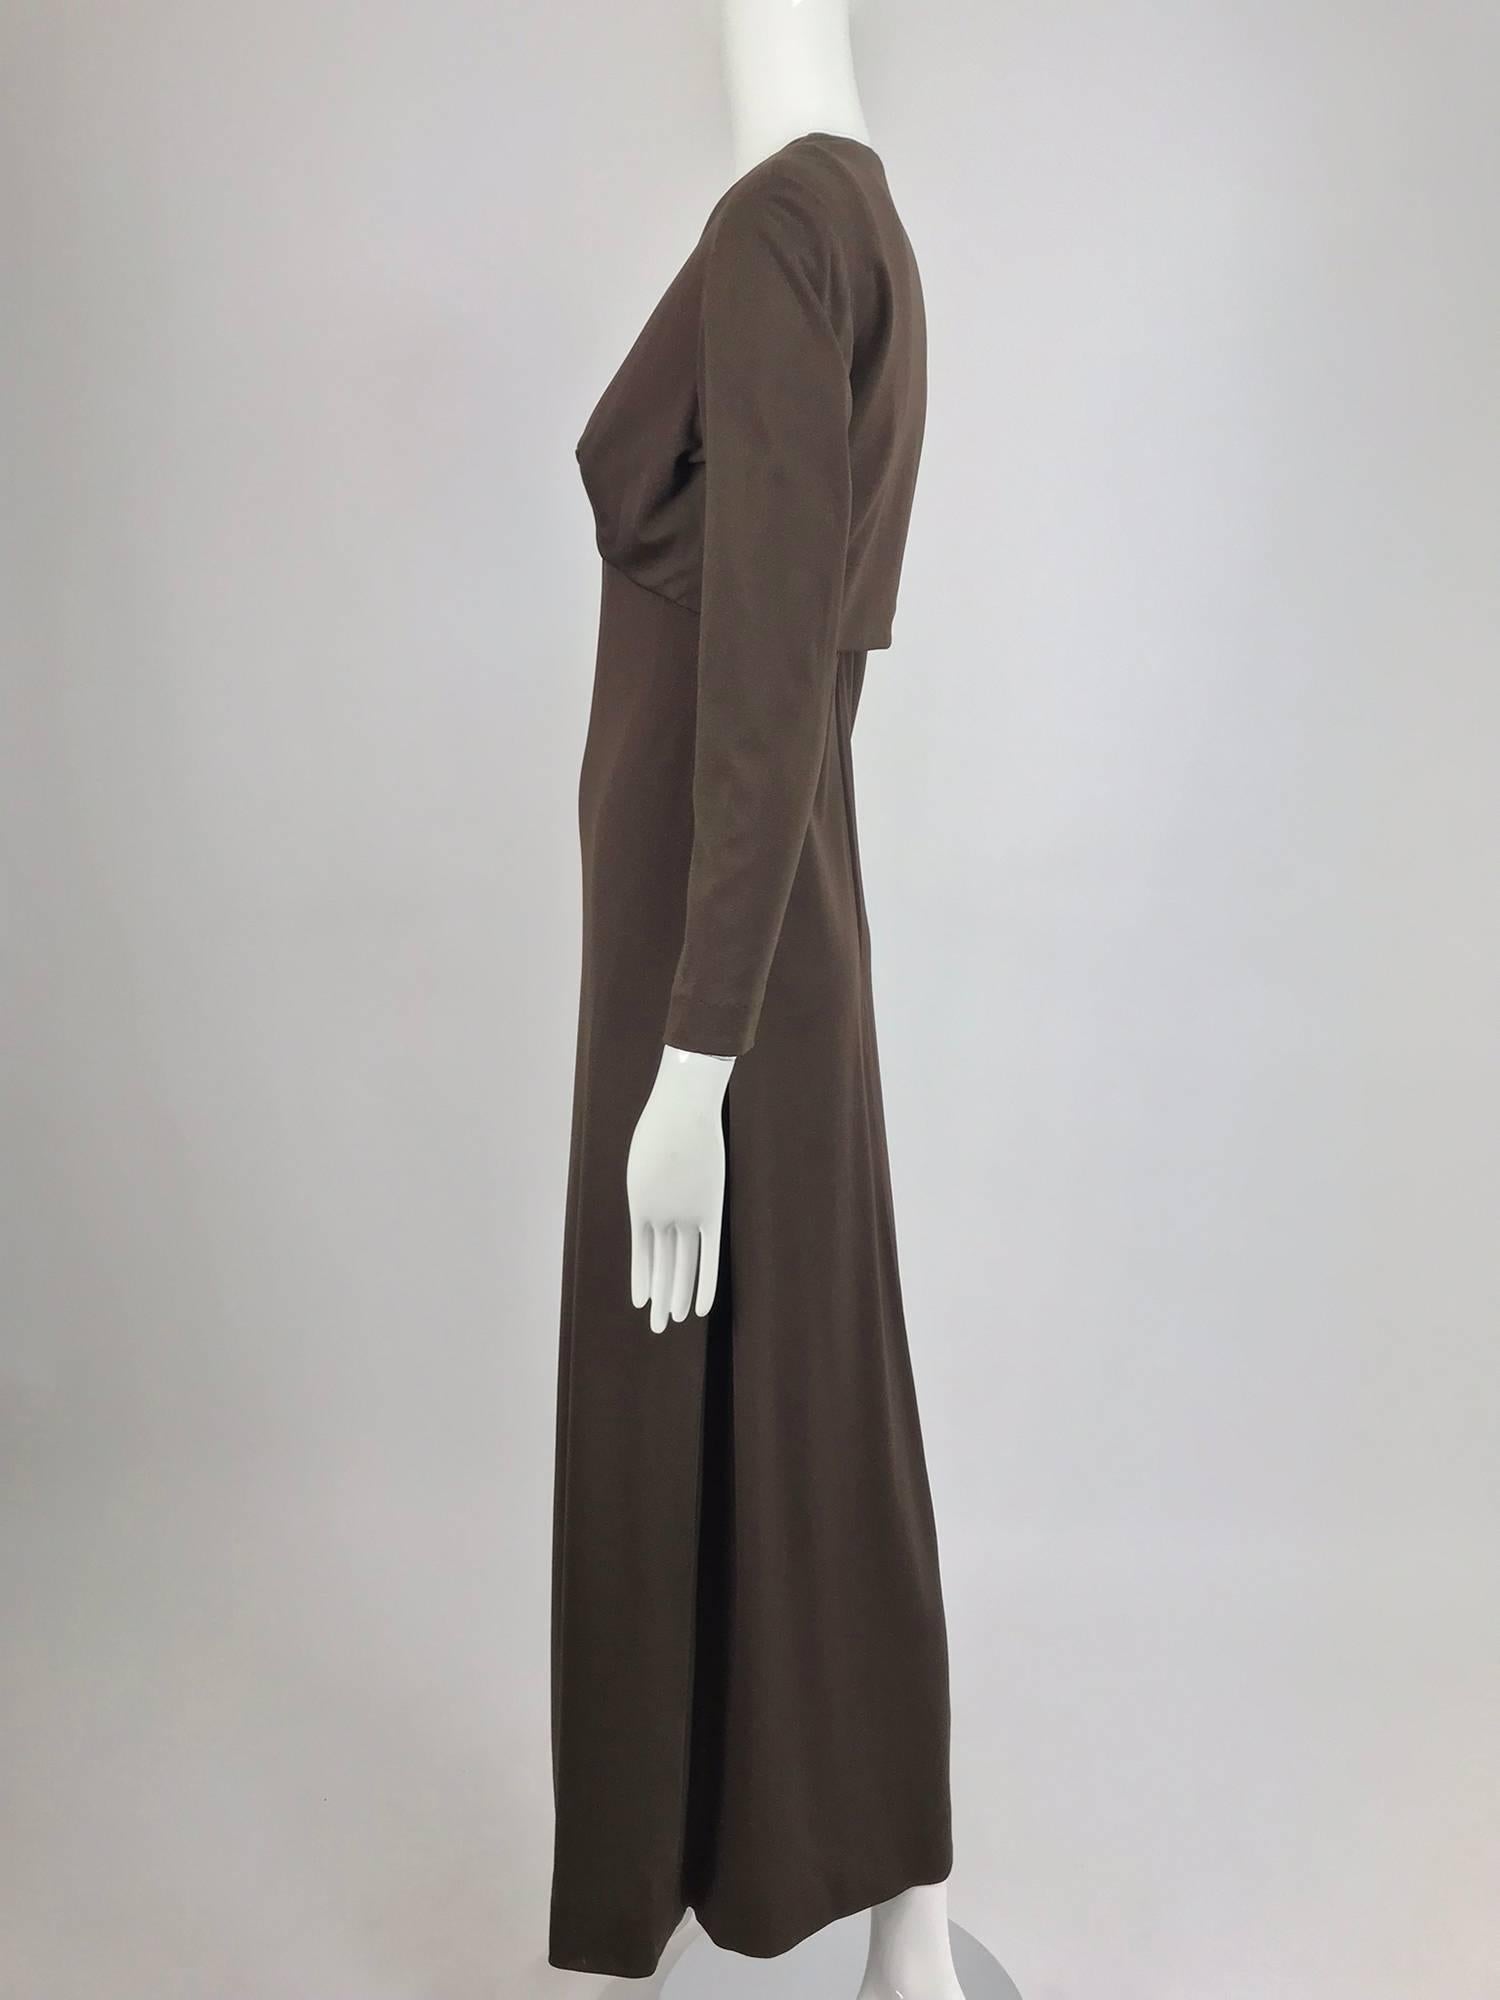 Estevez chocolate brown jersey maxi dress and jacket, 1970s 8